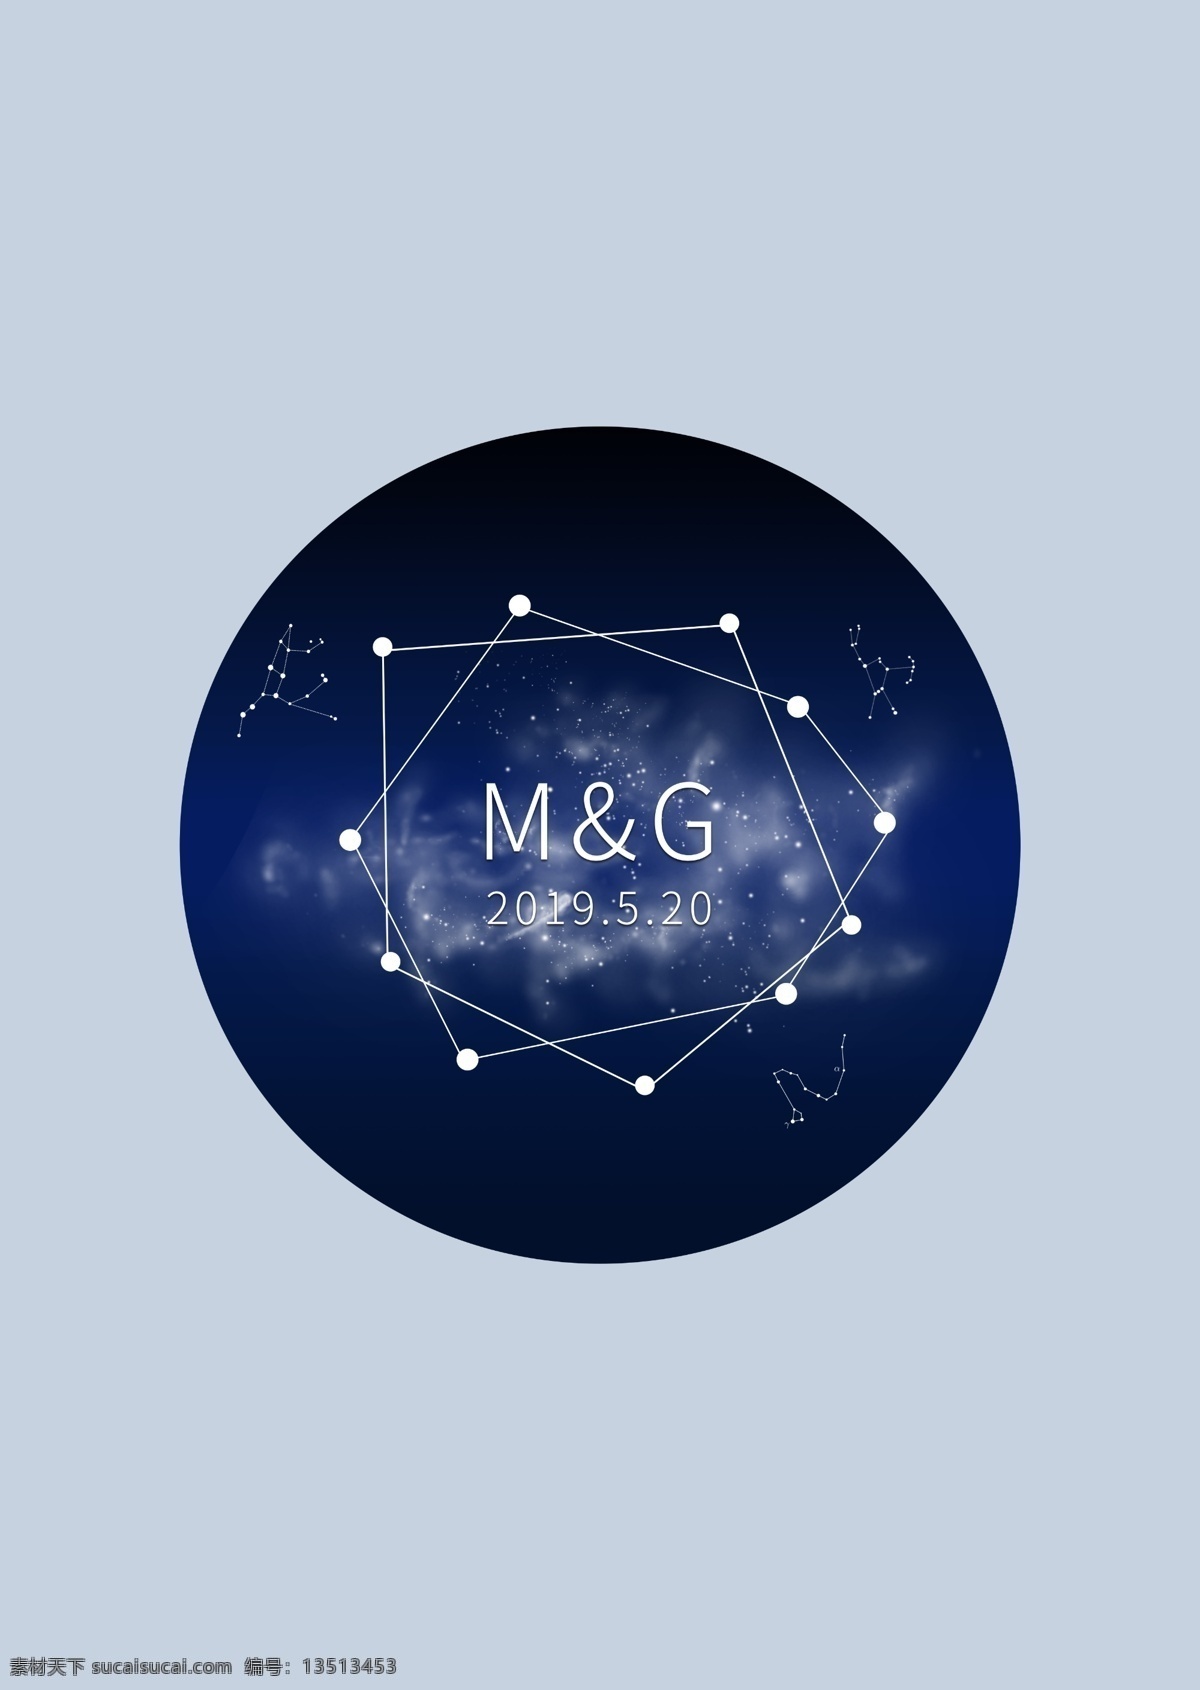 星空 婚礼 logo 星座 宇宙 logo设计 婚礼logo 元素 深色 蓝色